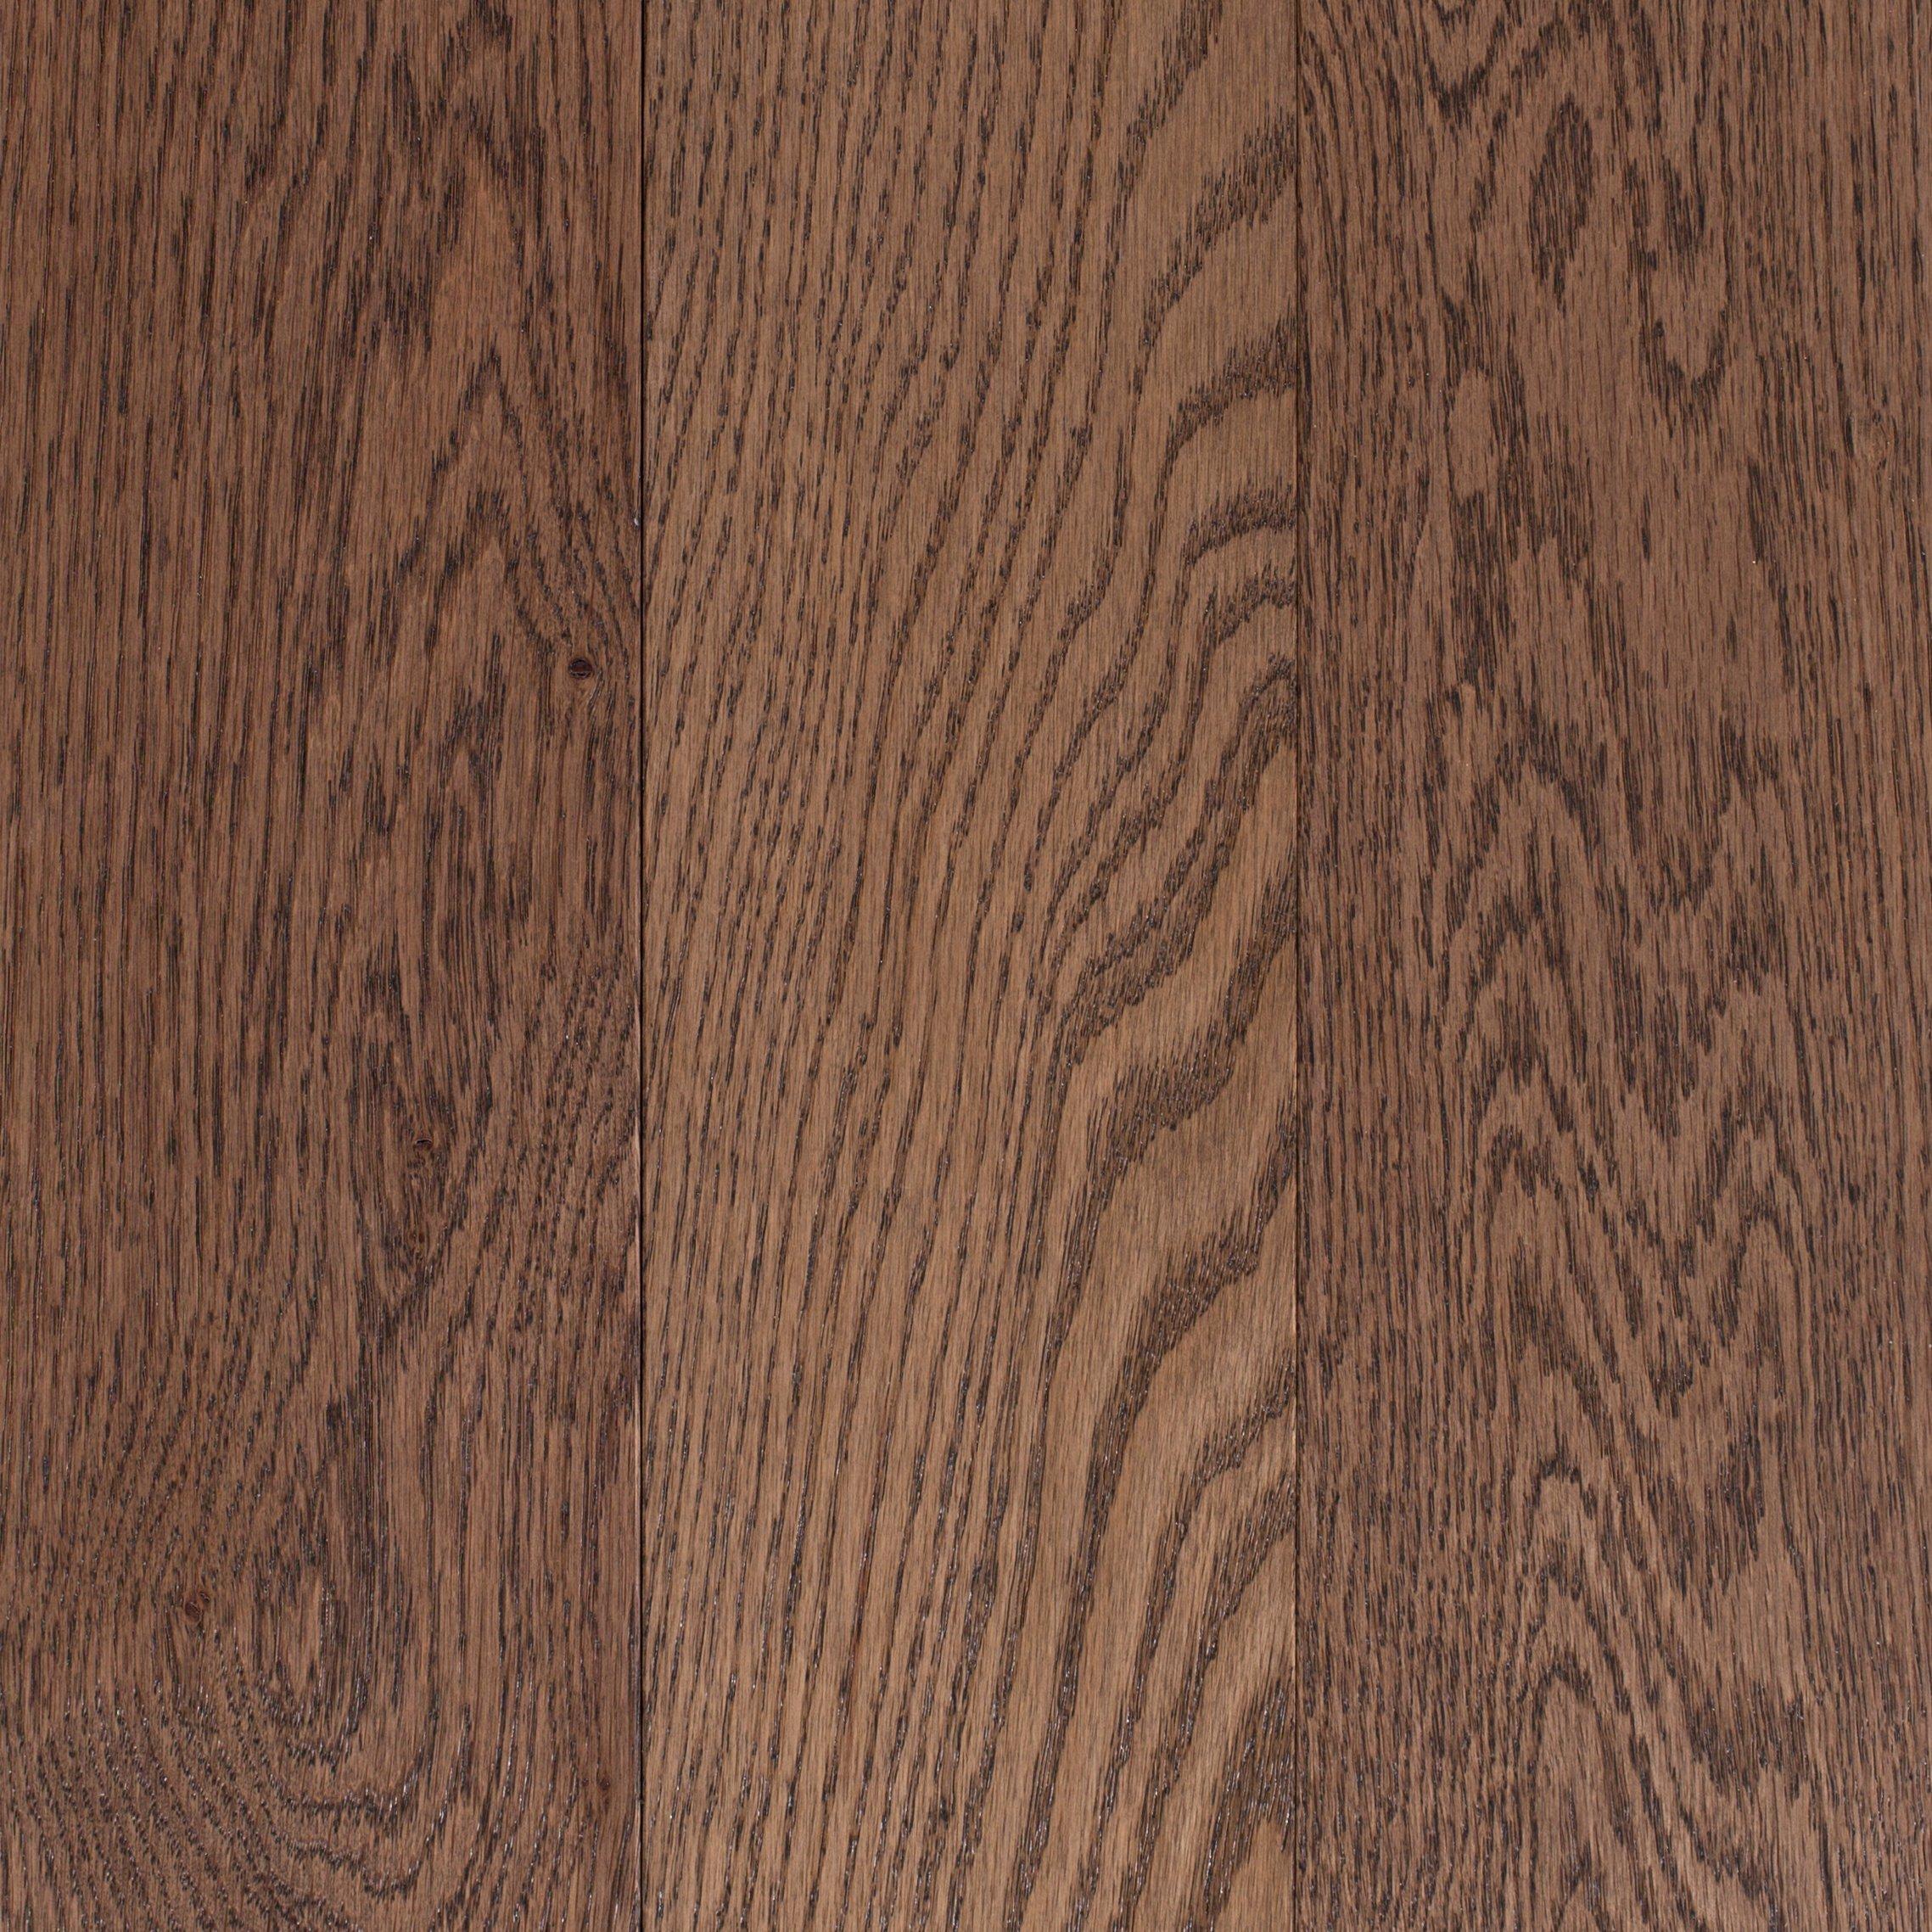 Myreen Oak Smooth Solid Hardwood